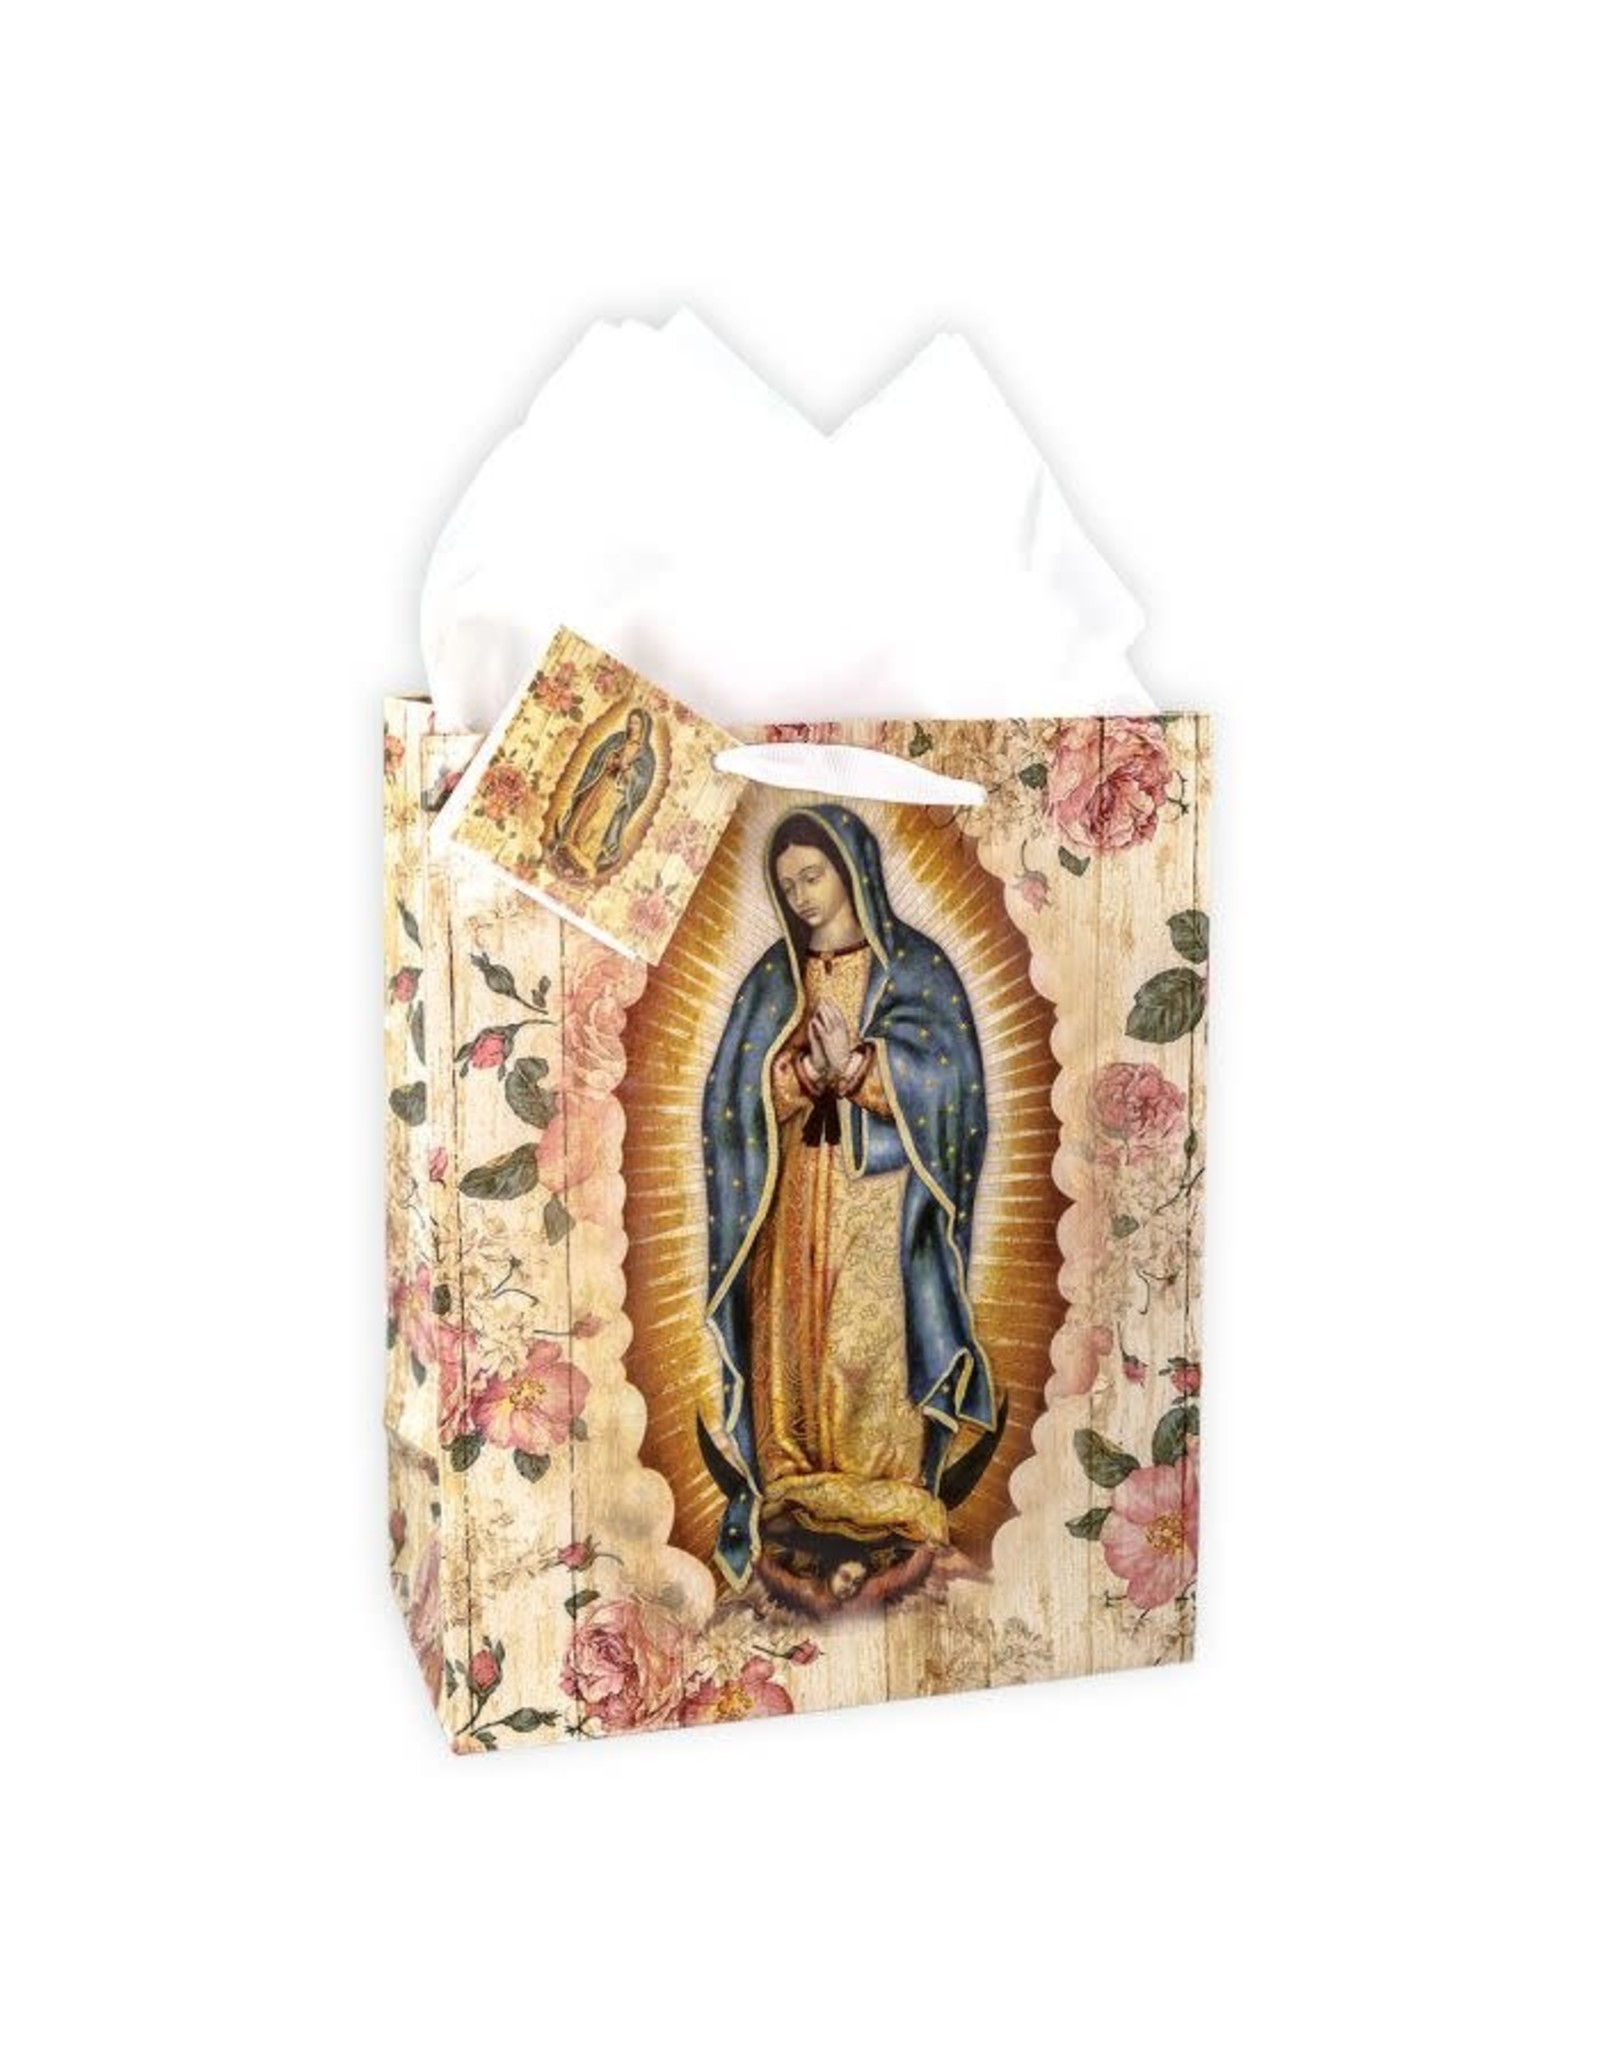 Hirten Medium Giftbag - Our Lady of Guadalupe